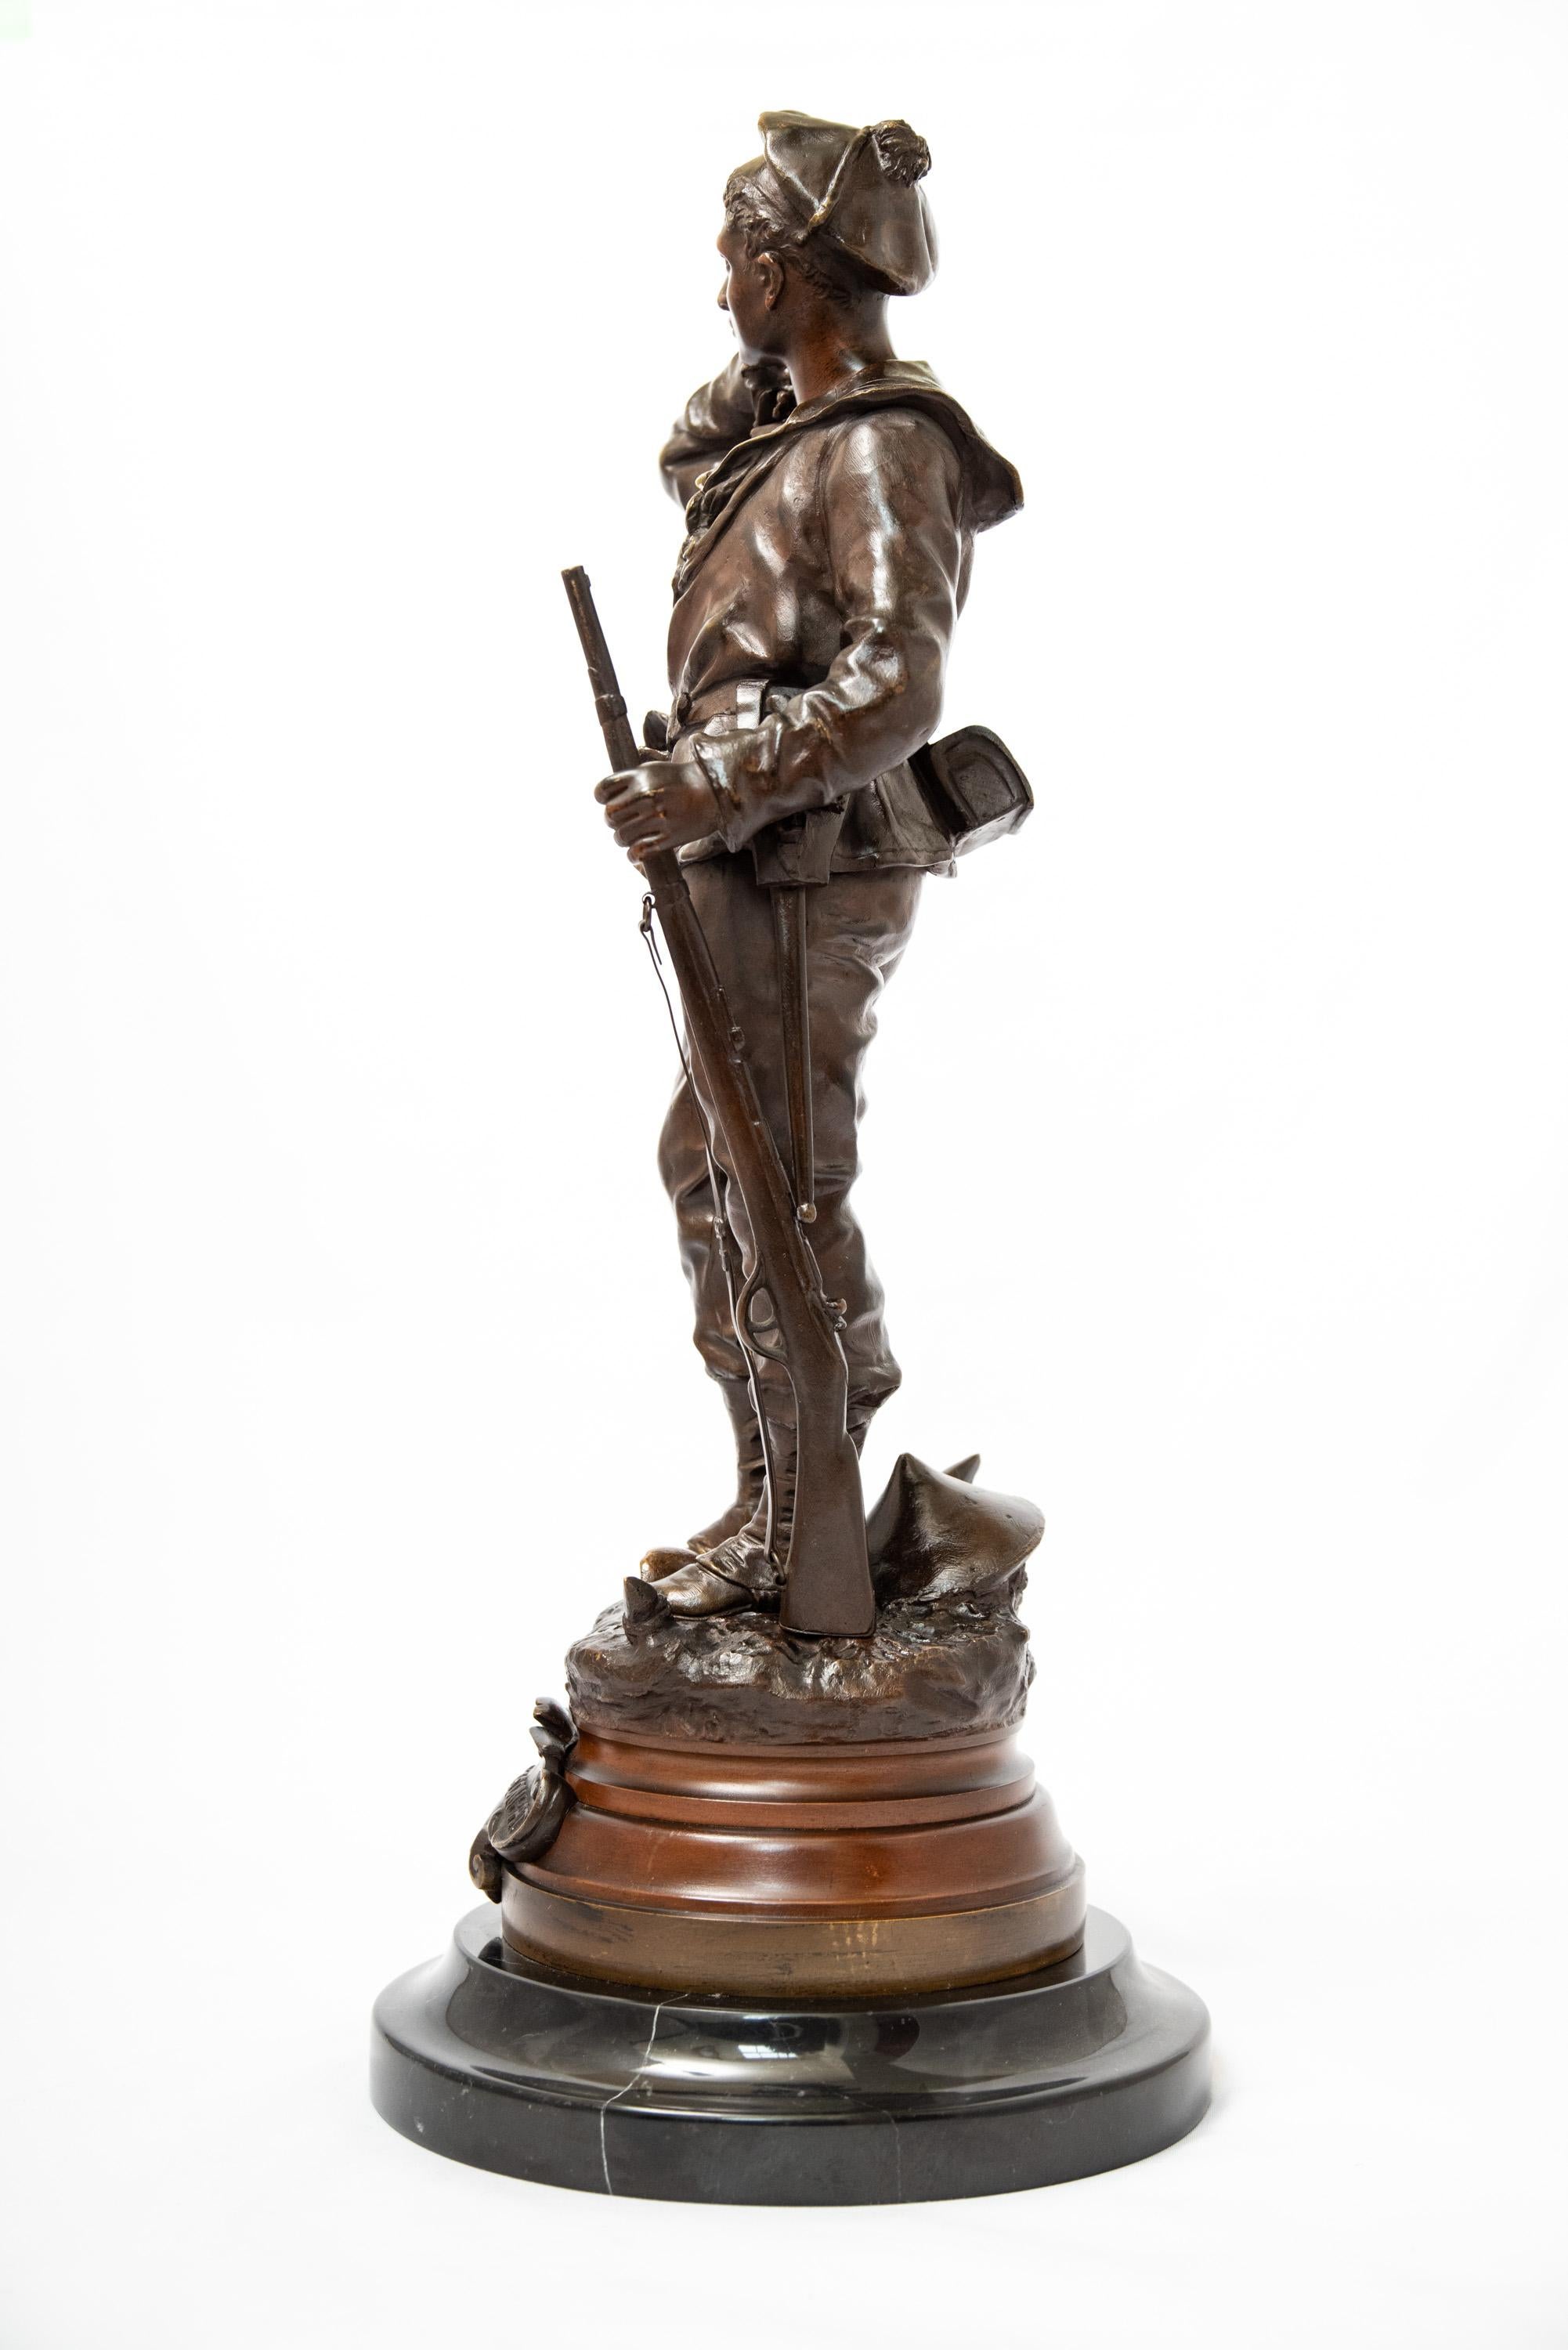 Le sculpteur français Charles Anfrie (1833-1905) a réalisé de nombreuses pièces sur des thèmes martiaux. Cette œuvre, qui porte un cartouche indiquant 